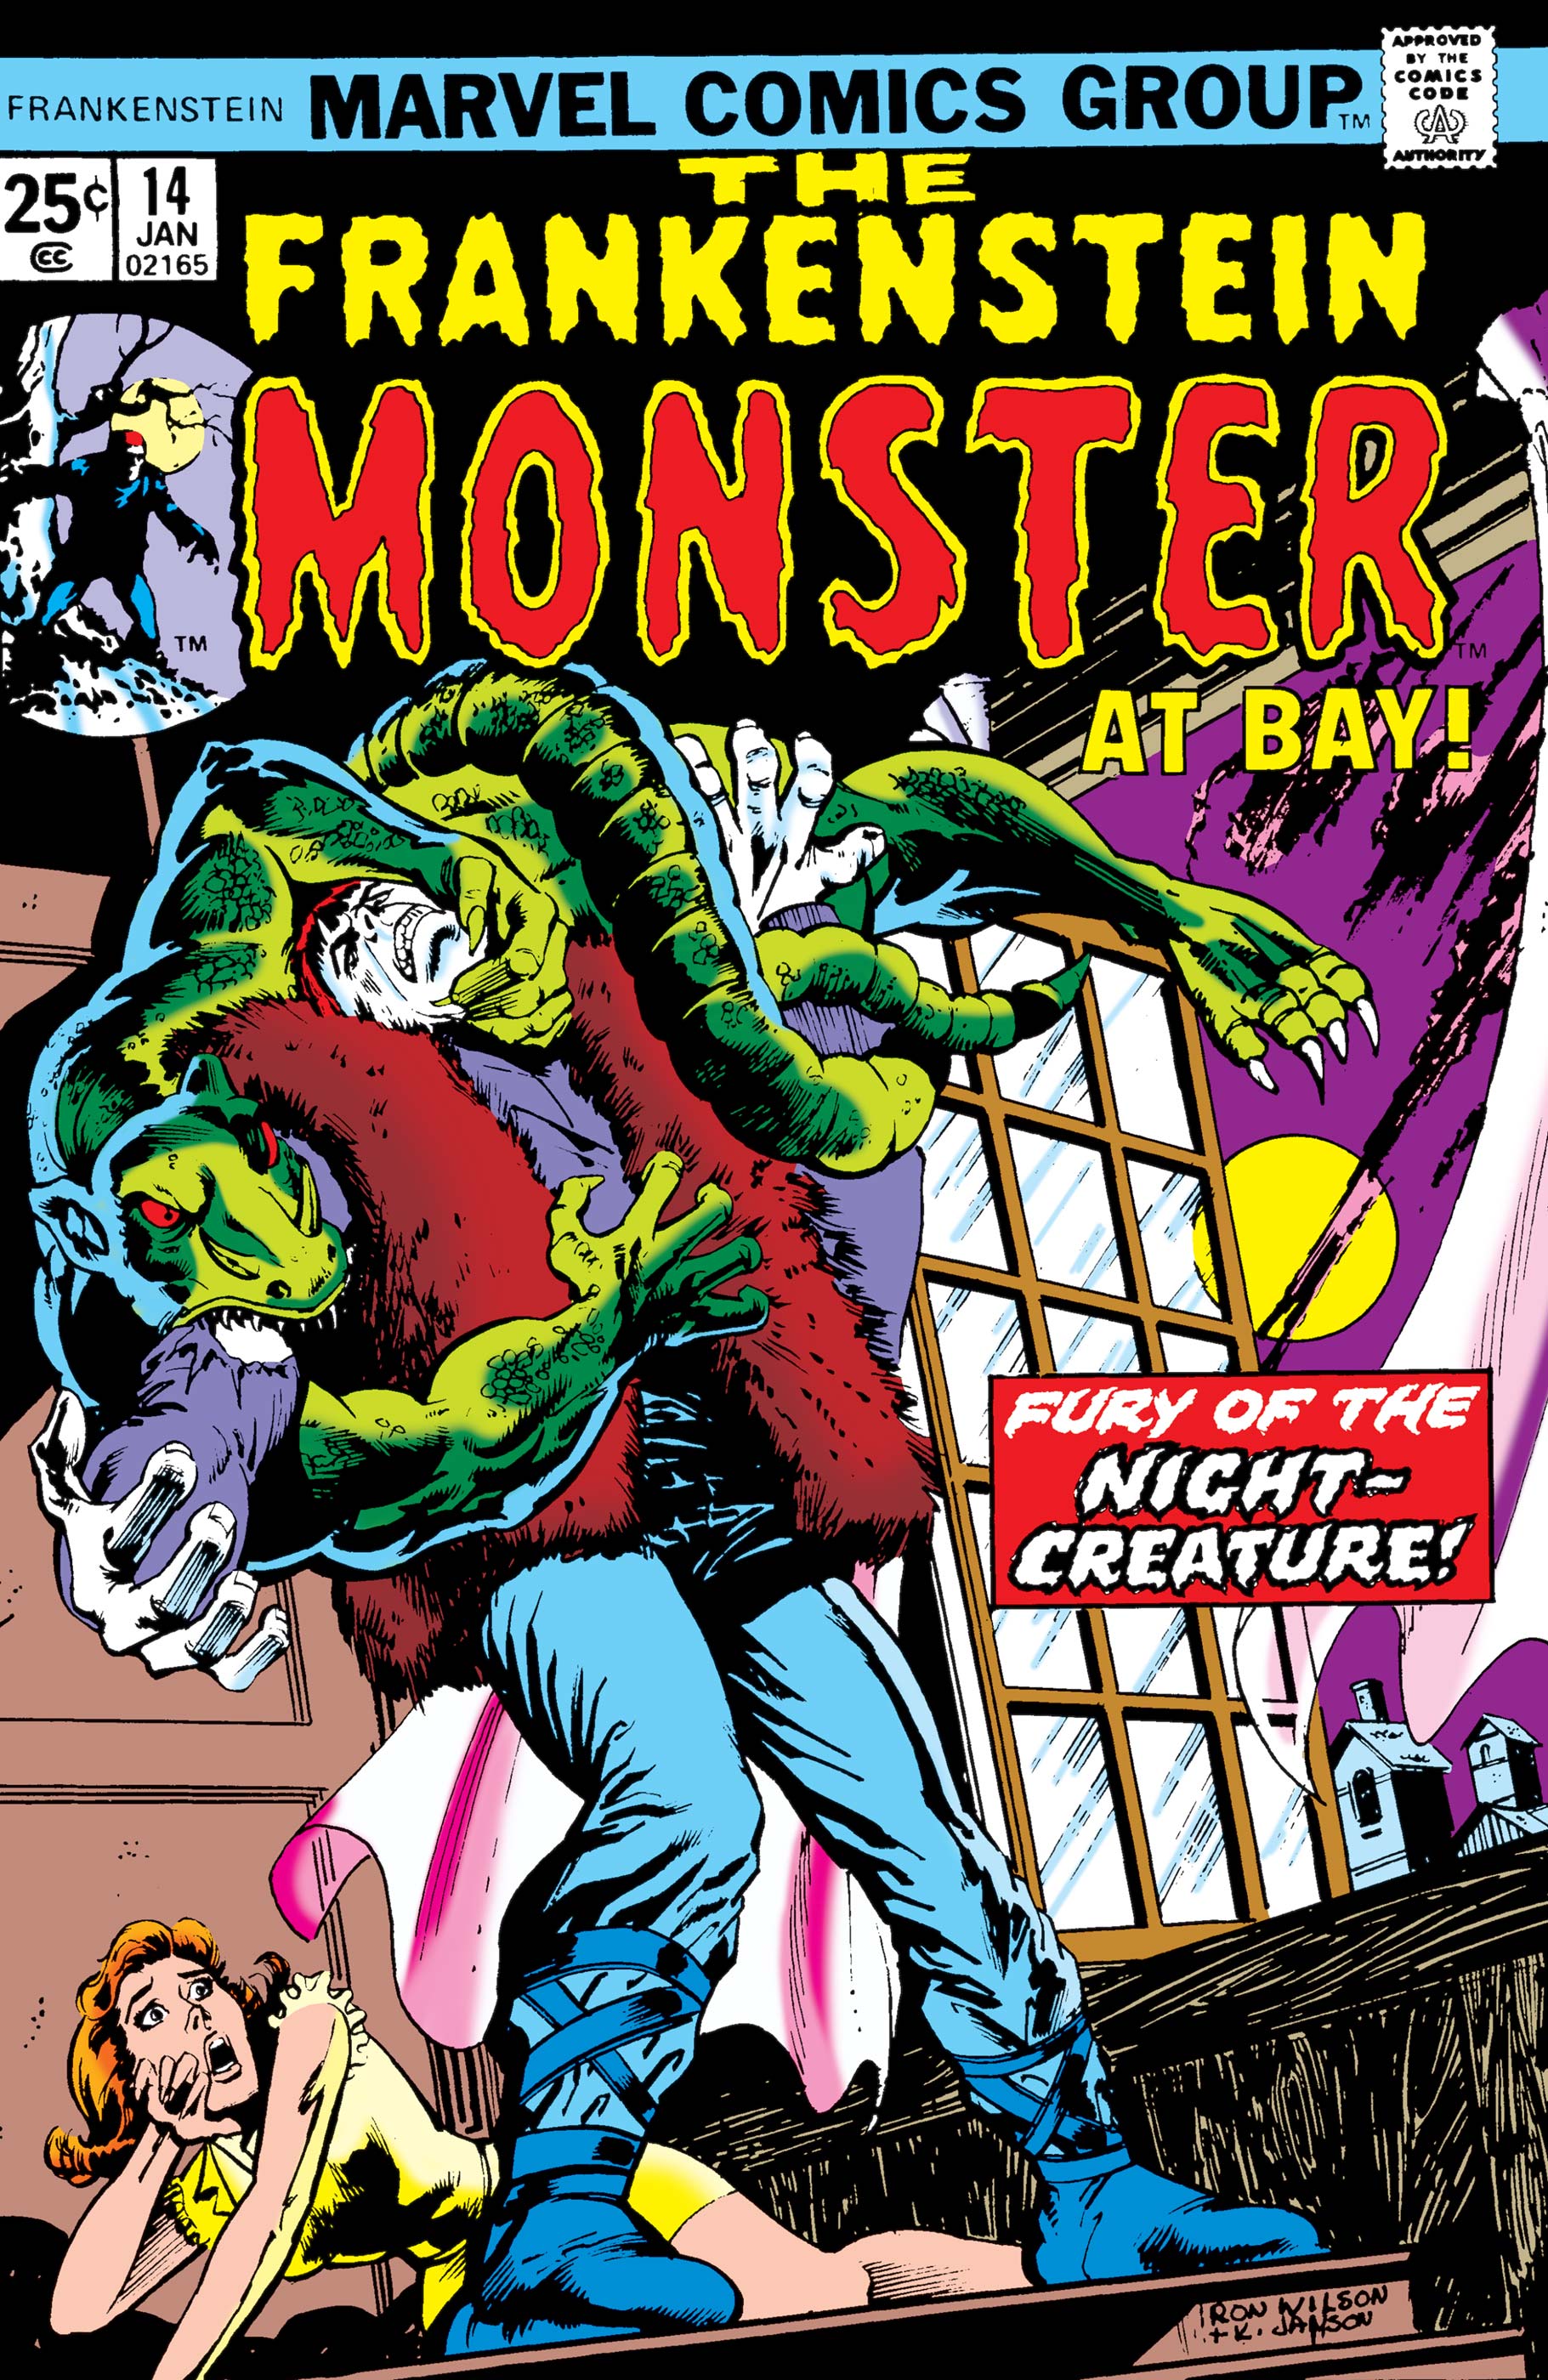 Frankenstein (1973) #14